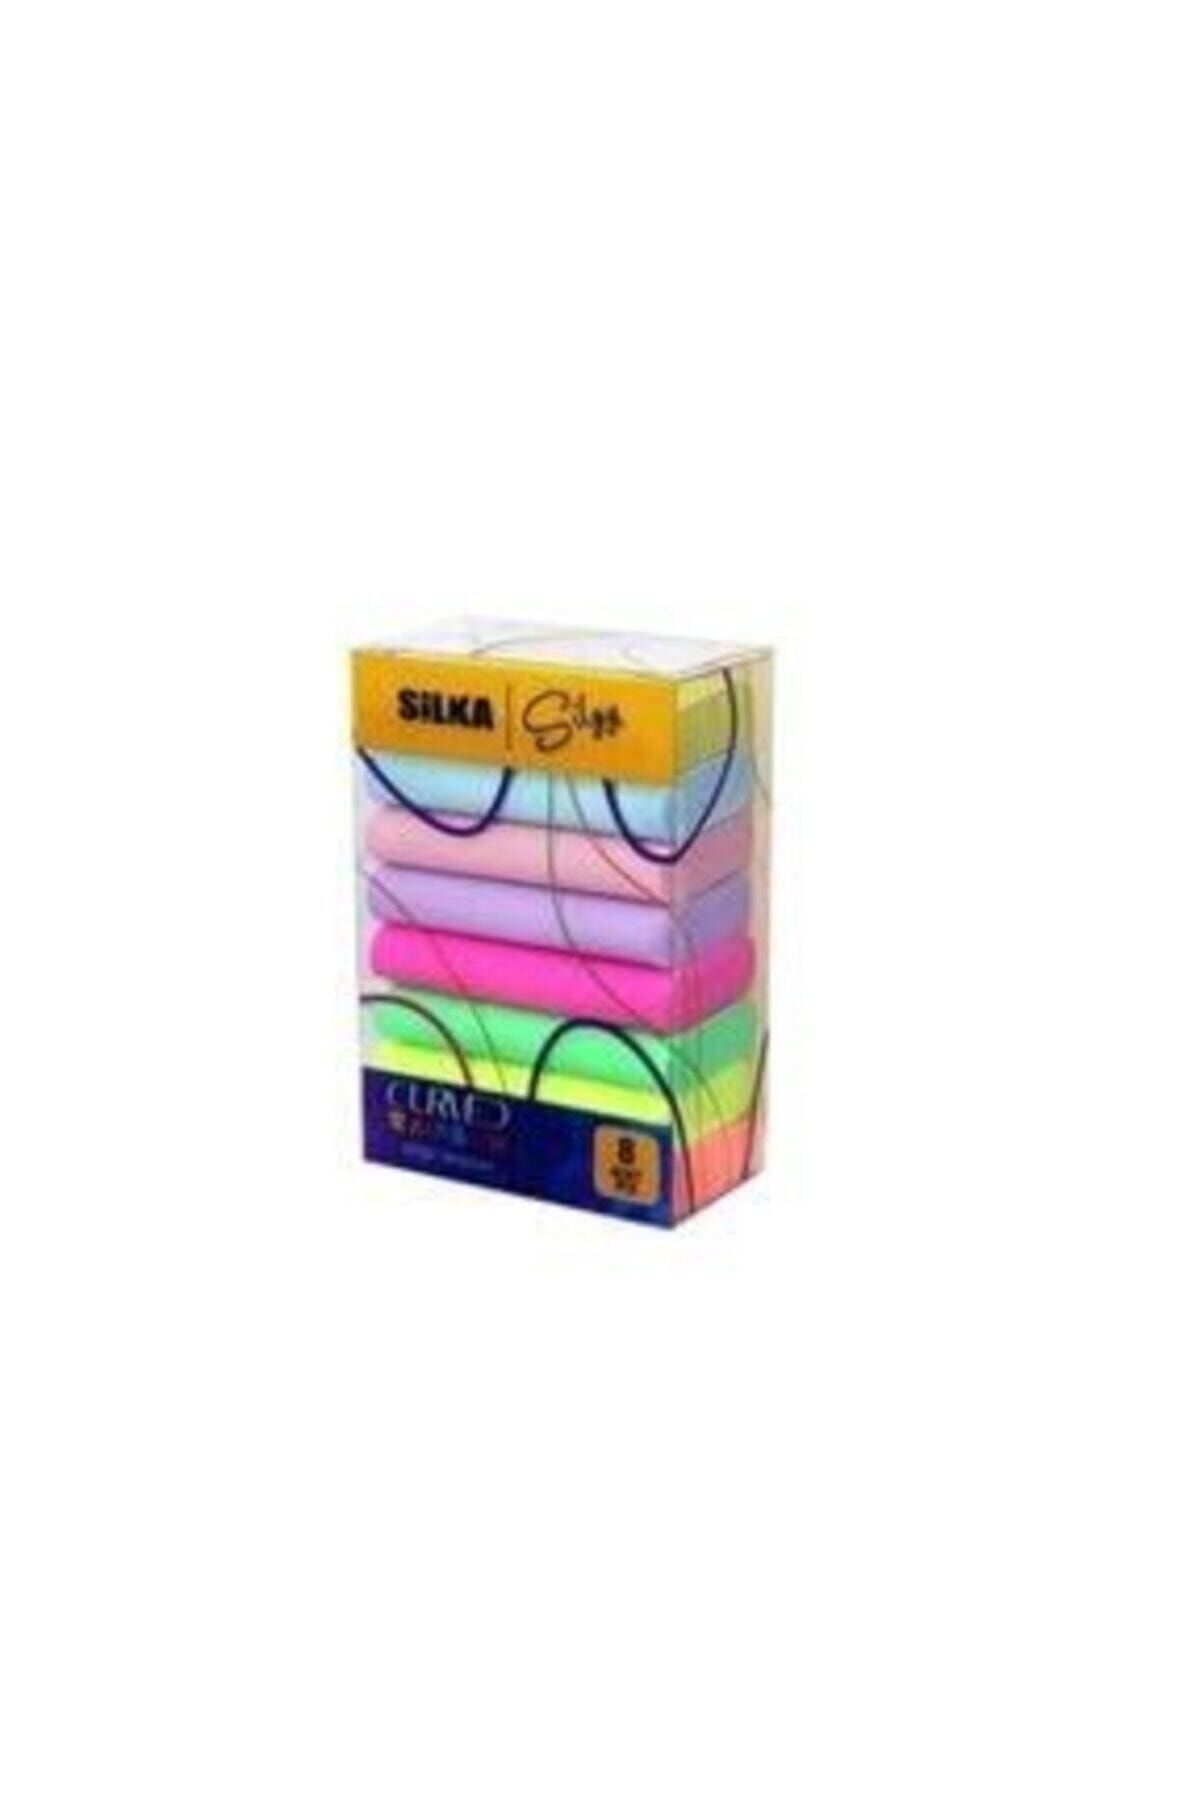 Silka Curved Rainbow Pastel Silgi 8'li Sınav Silgisi Renkli